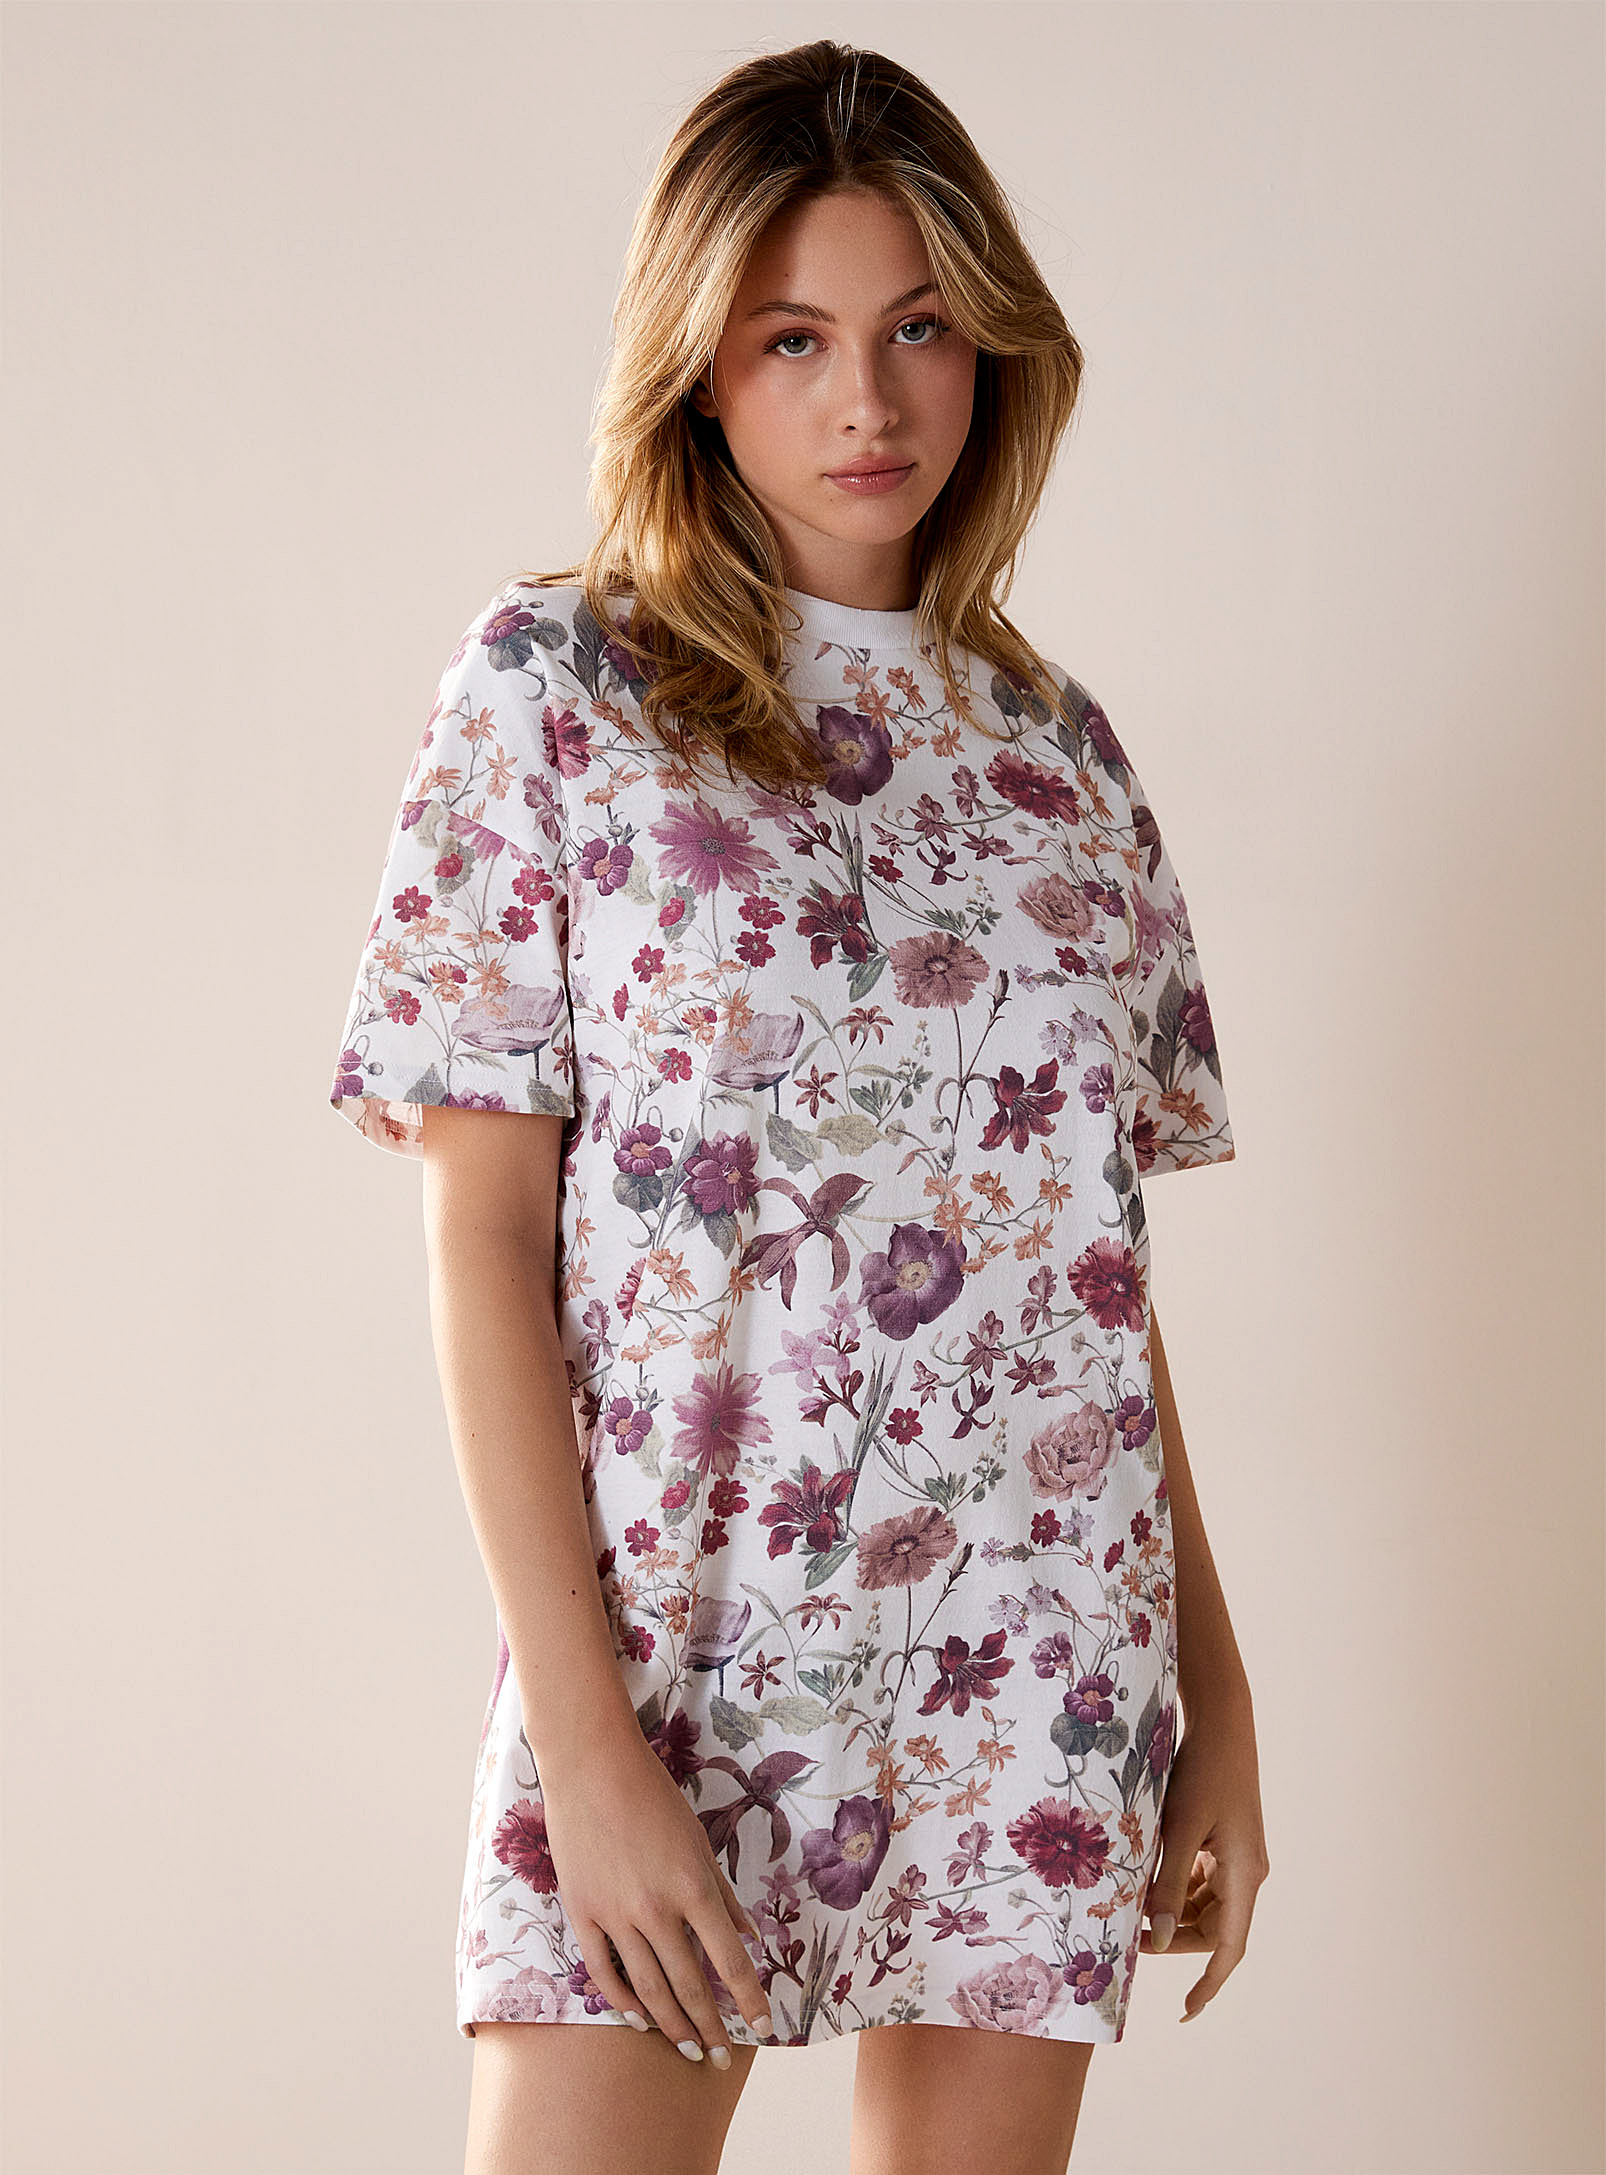 Miiyu - Women's Summer bloom sleep Tee Shirt Circular manufacturing